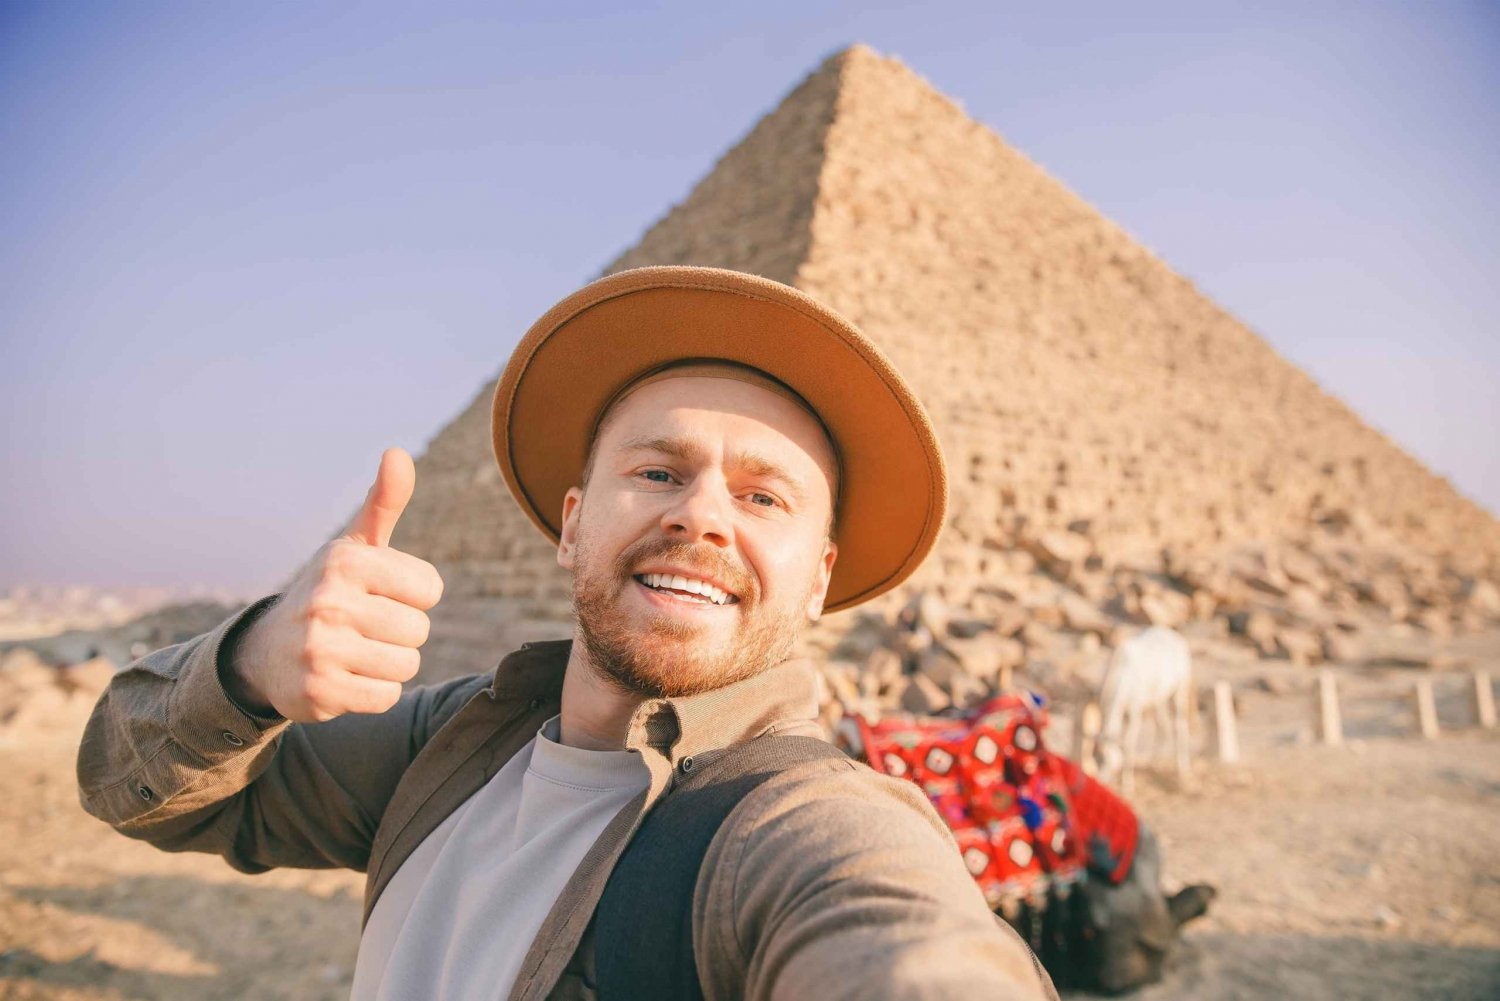 Hurghada: całodniowa wycieczka do Kairu, piramid w Gizie i muzeum z przewodnikiem